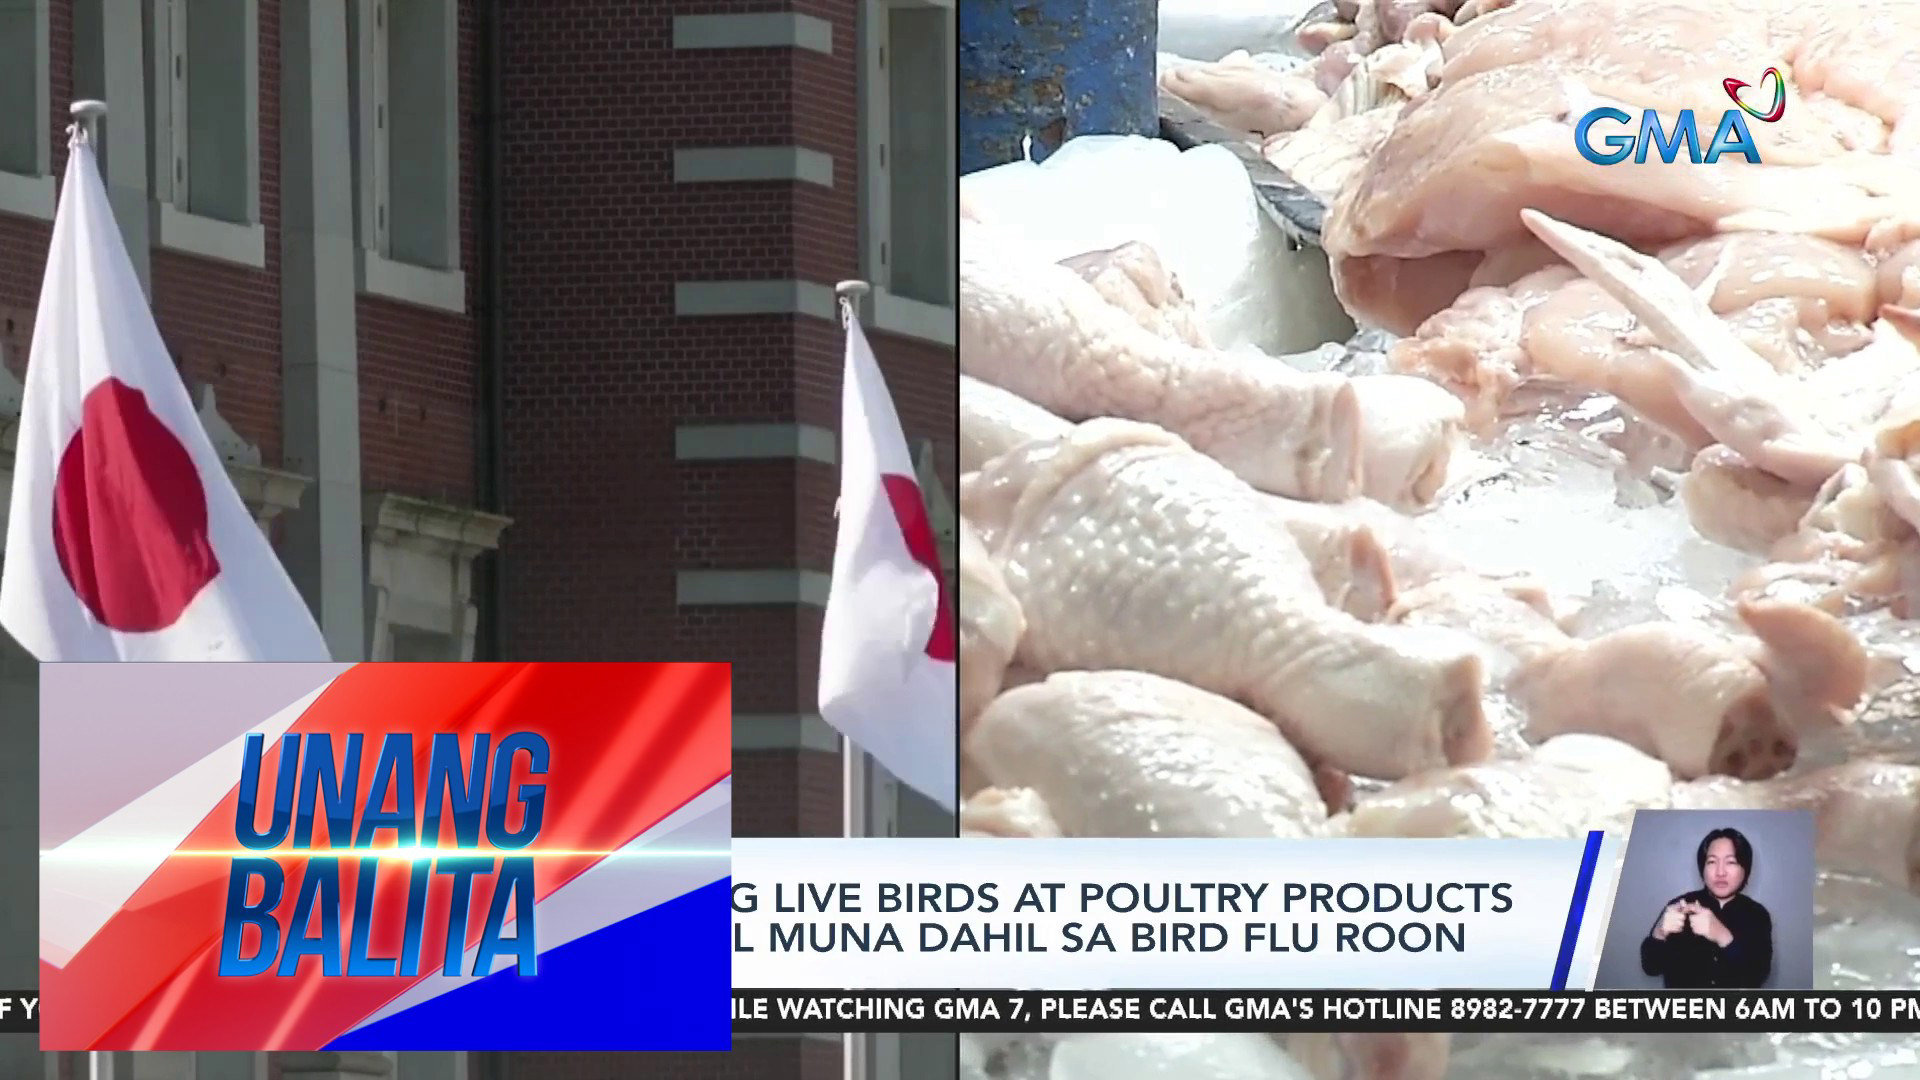 Pag Aangkat Ng Live Birds And Poultry Products Sa Japan Bawal Muna Dahil Sa Bird Flu Roon Ub 8226